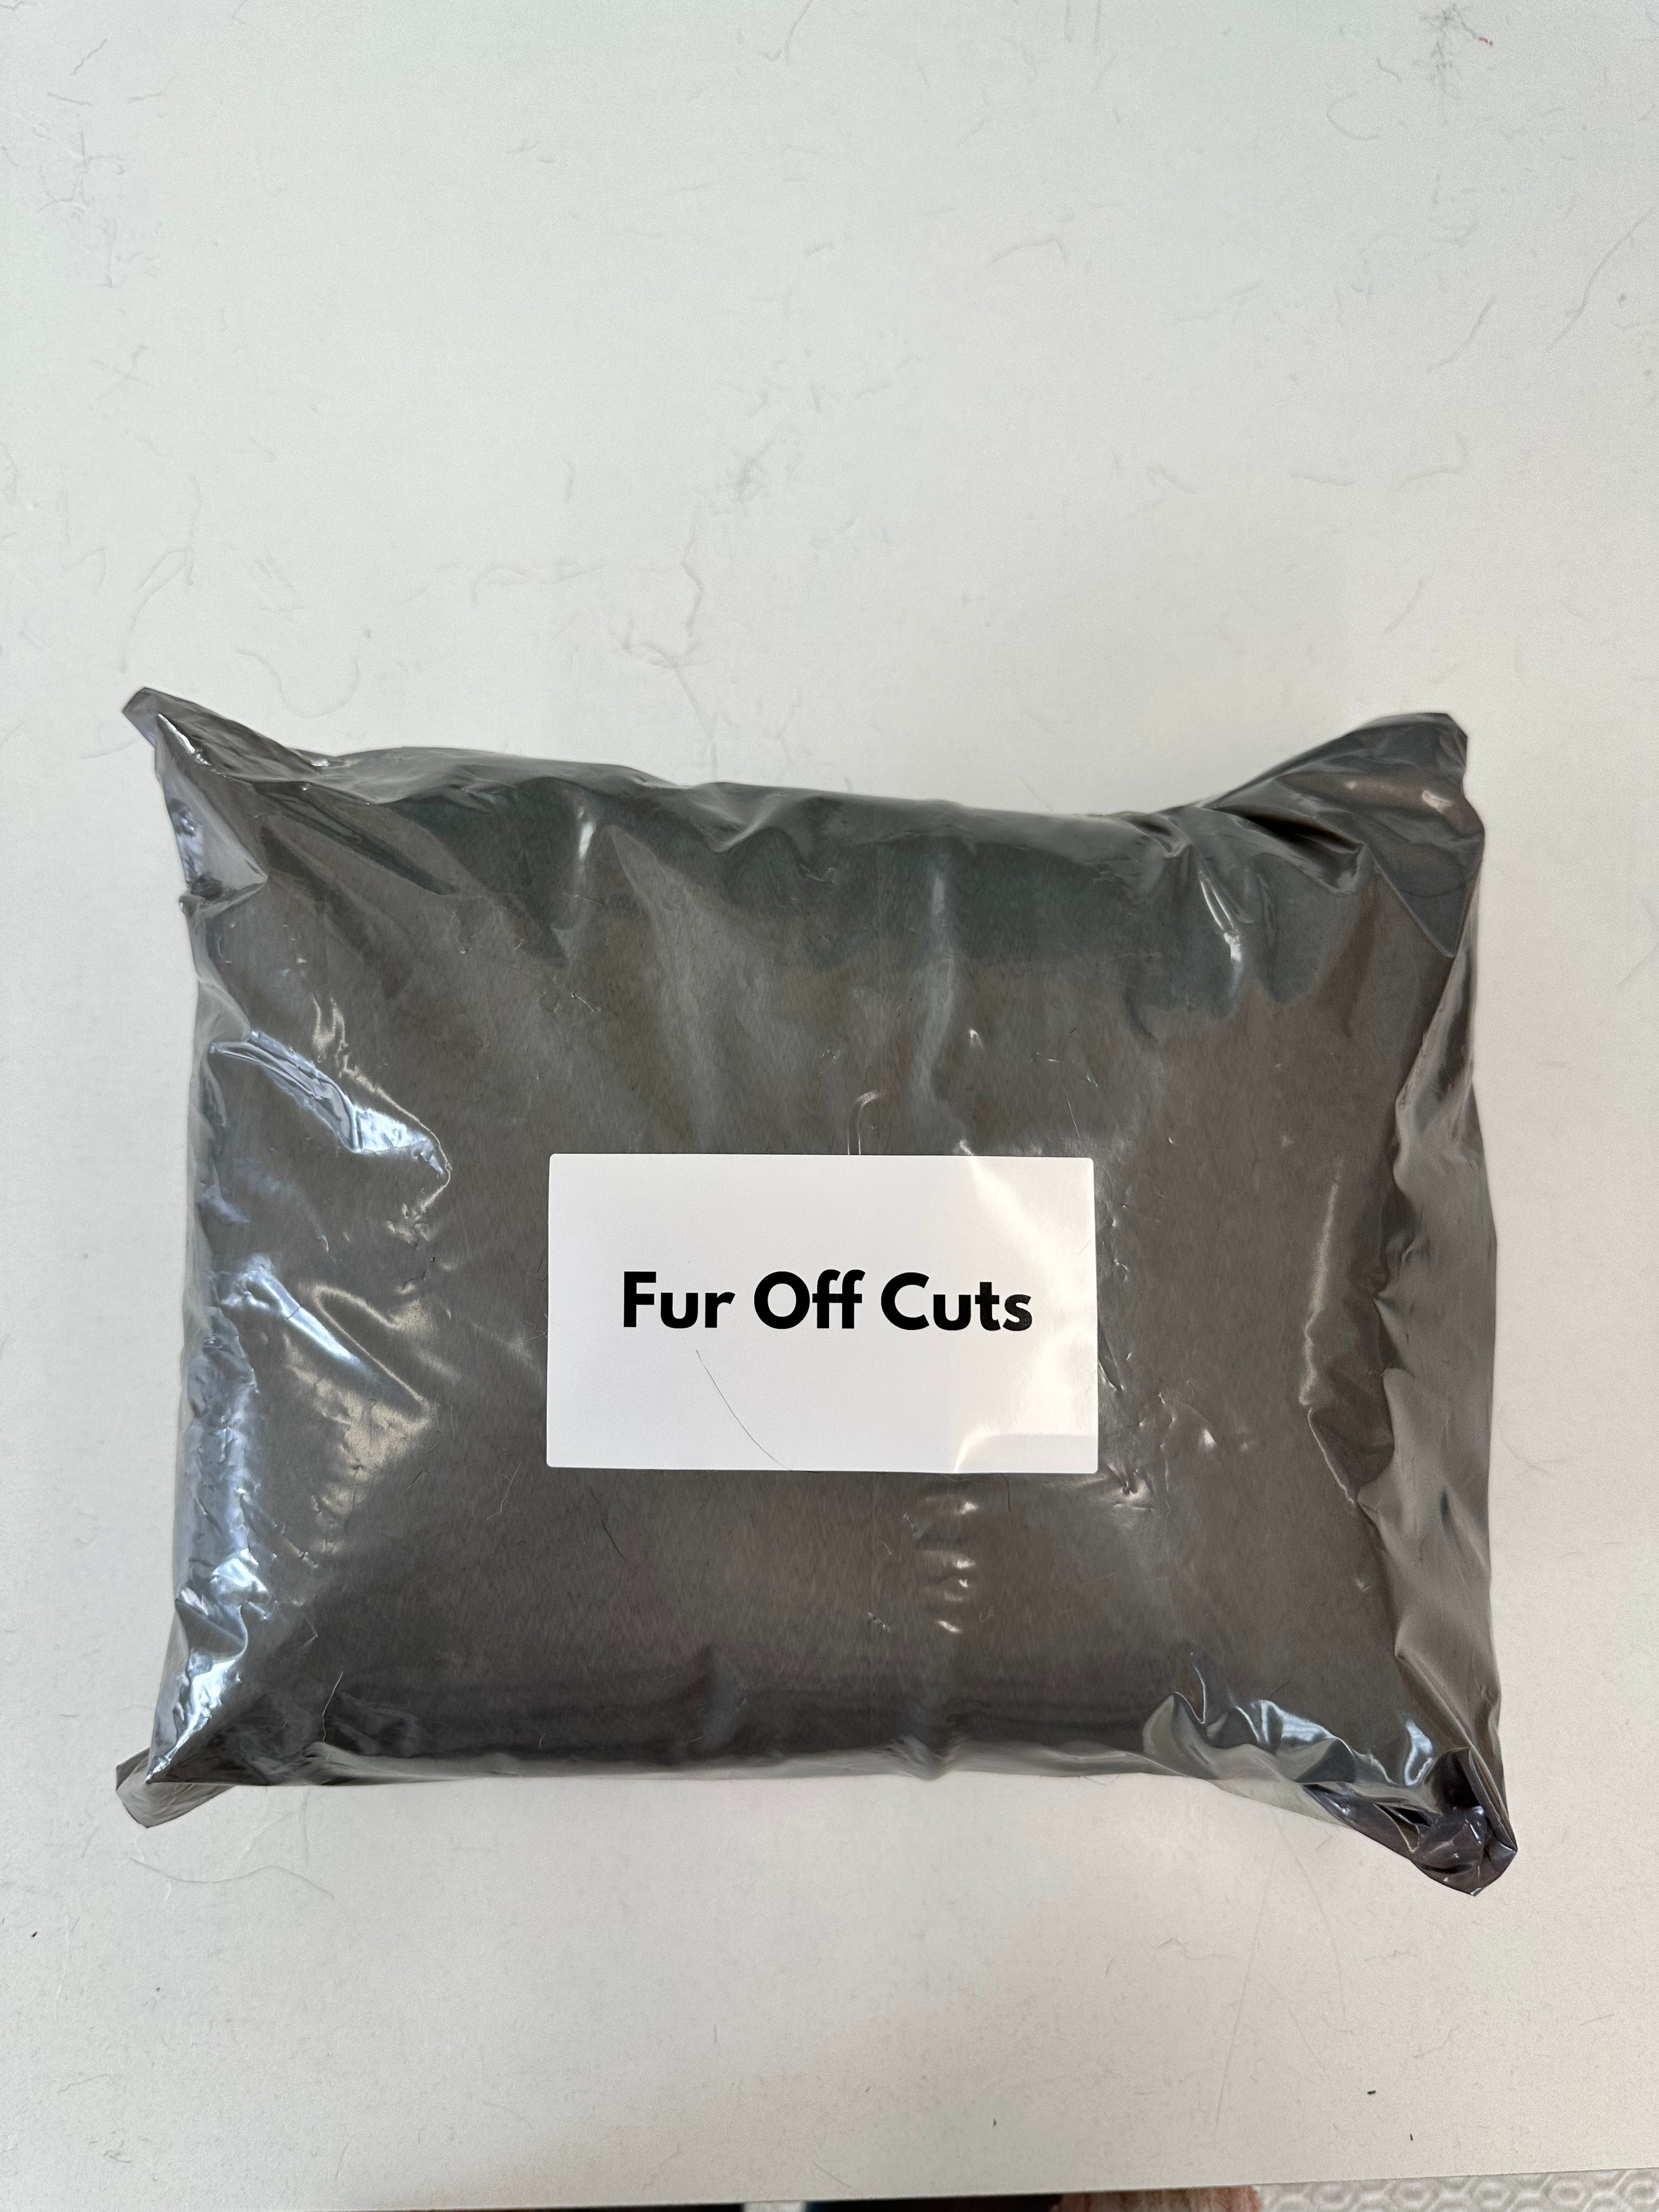 Fur Off Cuts - Mixed Bag